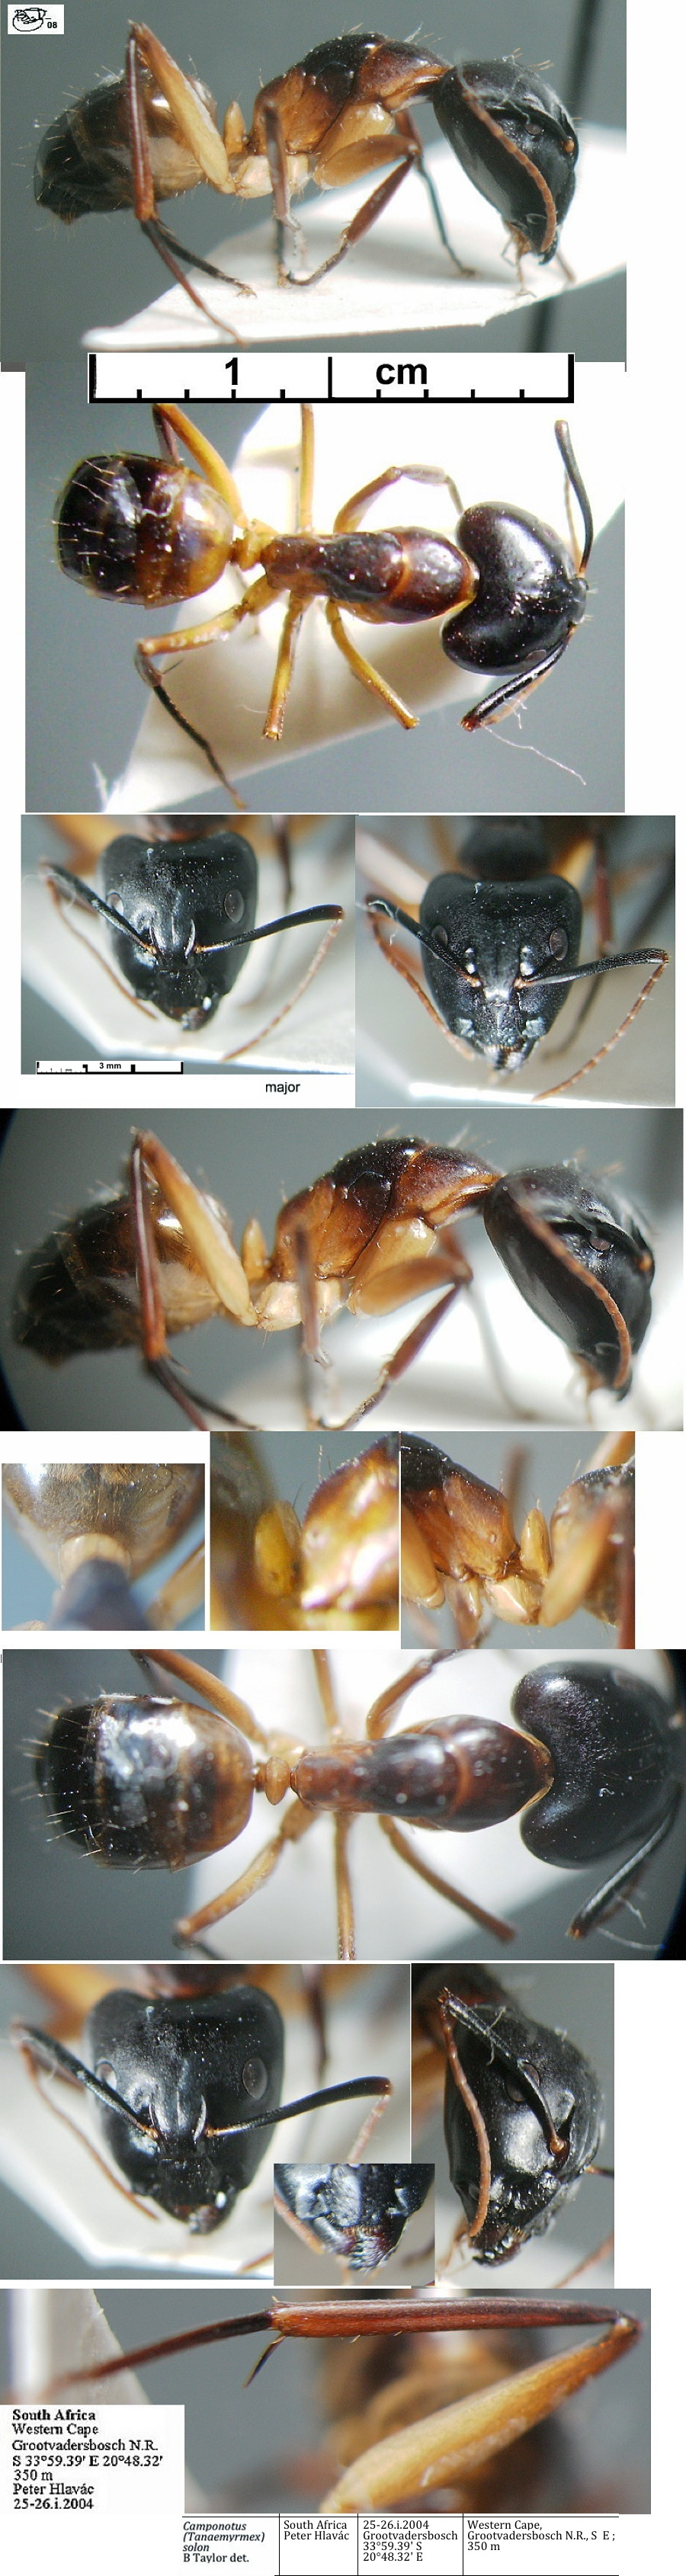 {Camponotus (Tanaemyrmex) solon major}